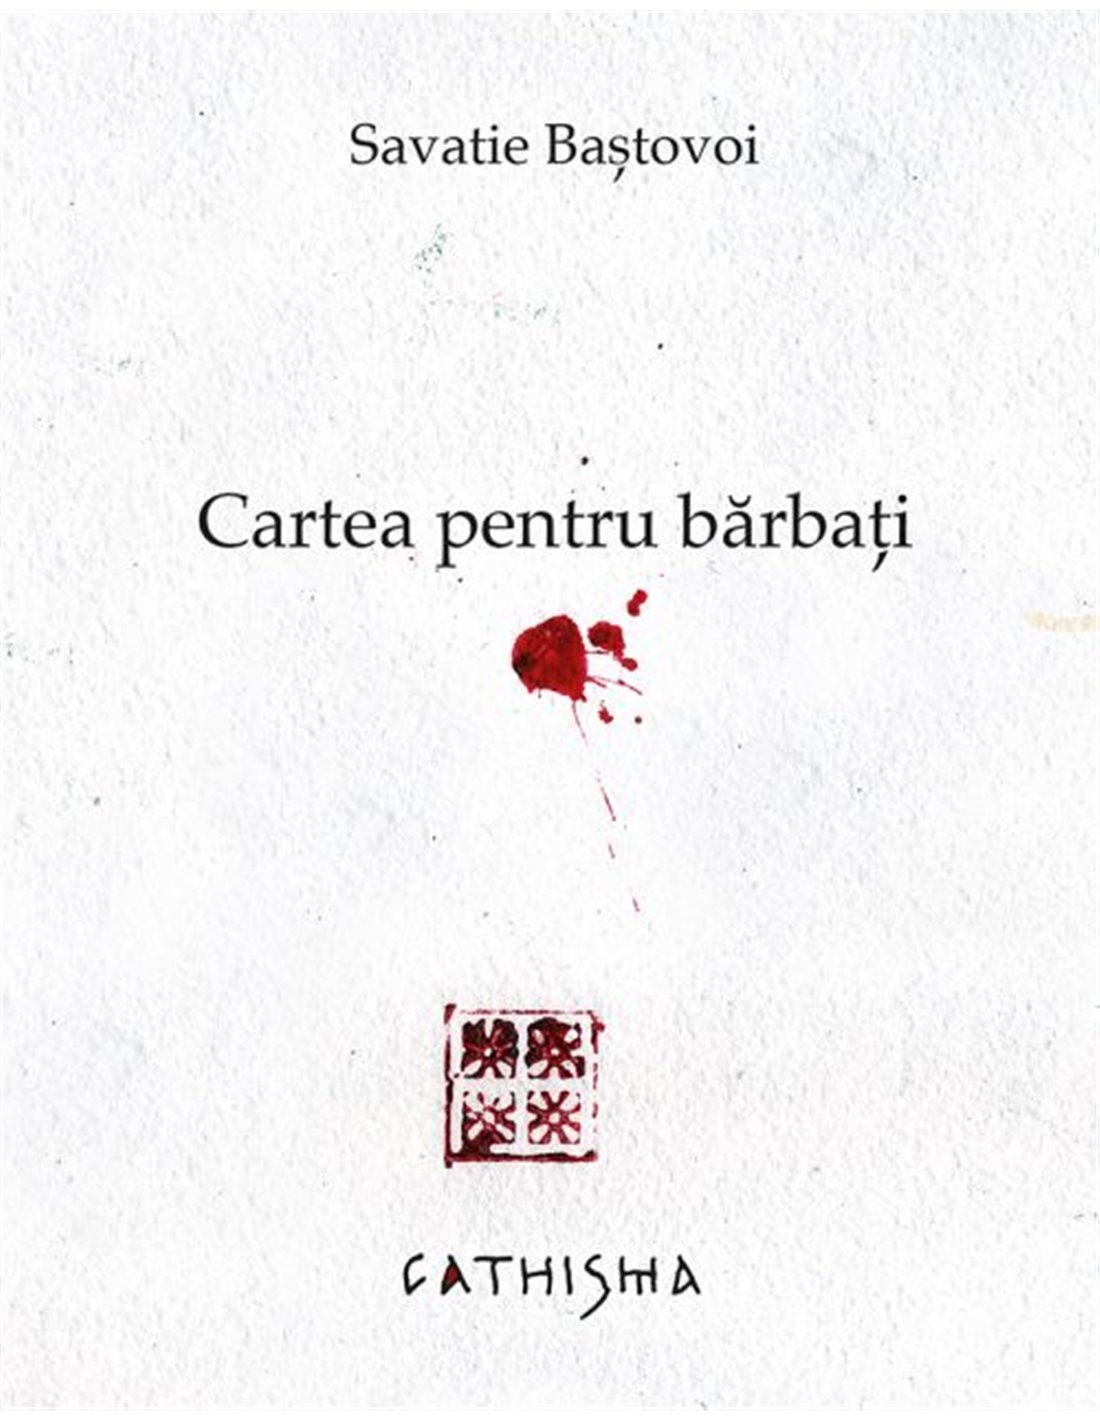 Cartea pentru bărbati - Savatie Bastovoi |Editura Cathisma